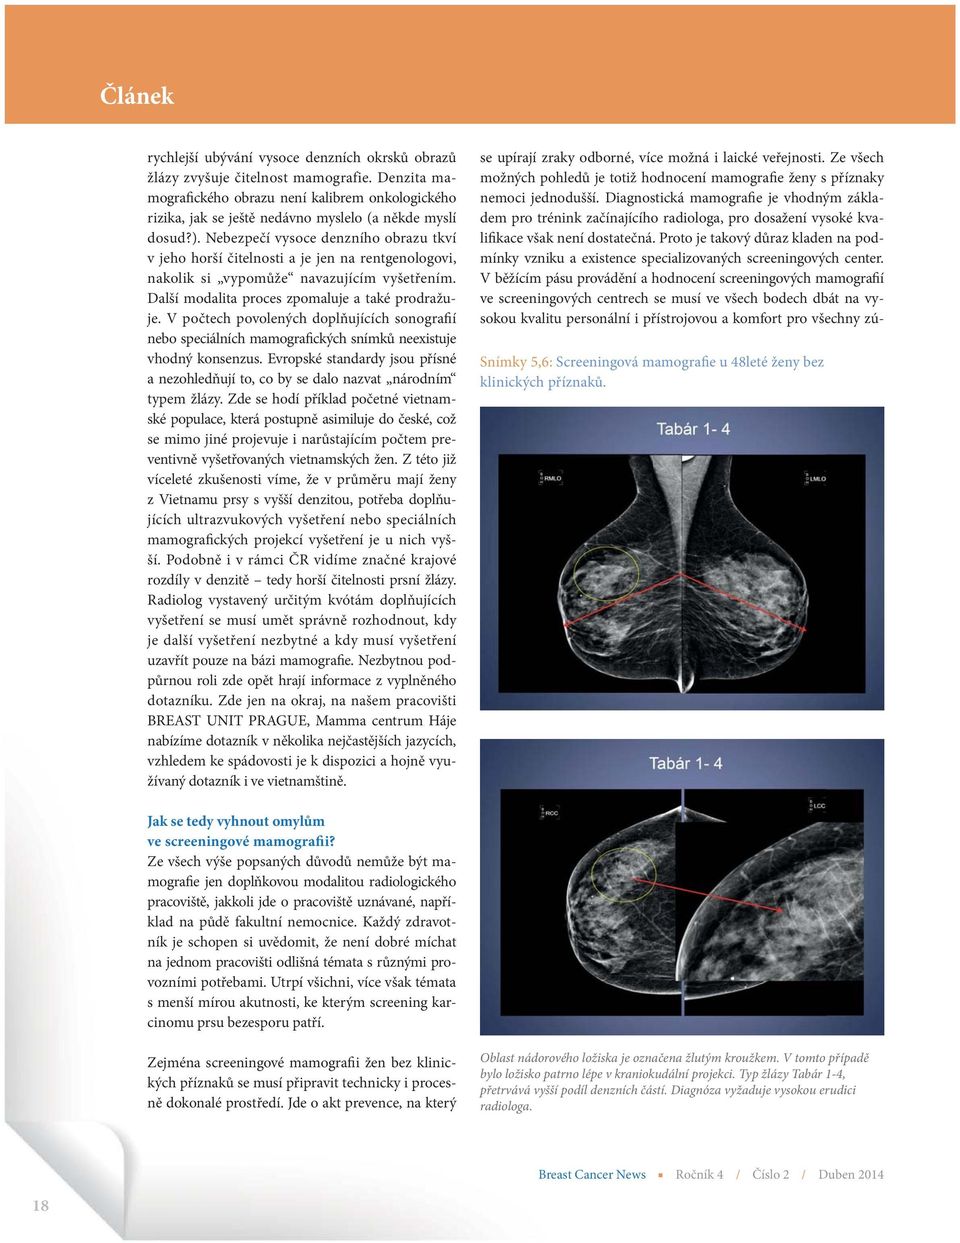 V počtech povolených doplňujících sonografií nebo speciálních mamografických snímků neexistuje vhodný konsenzus.